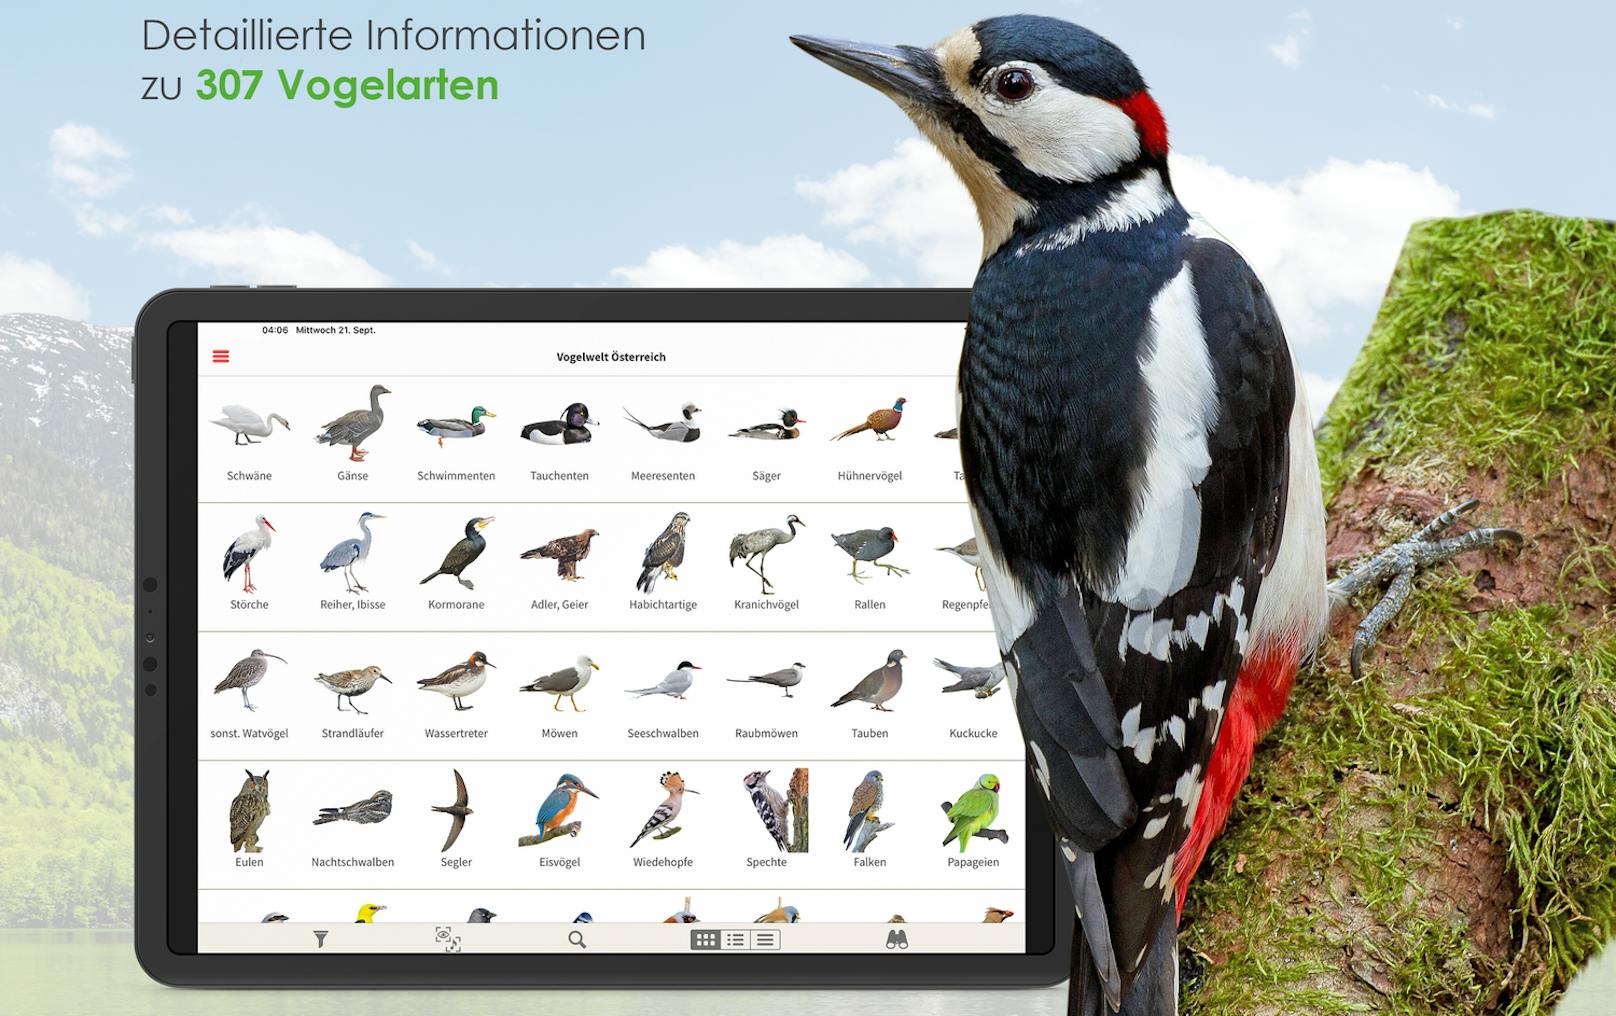 Über 300 verschiedene Arten sind bereits in der Birdlife-App "Vögel in Österreich" registriert.